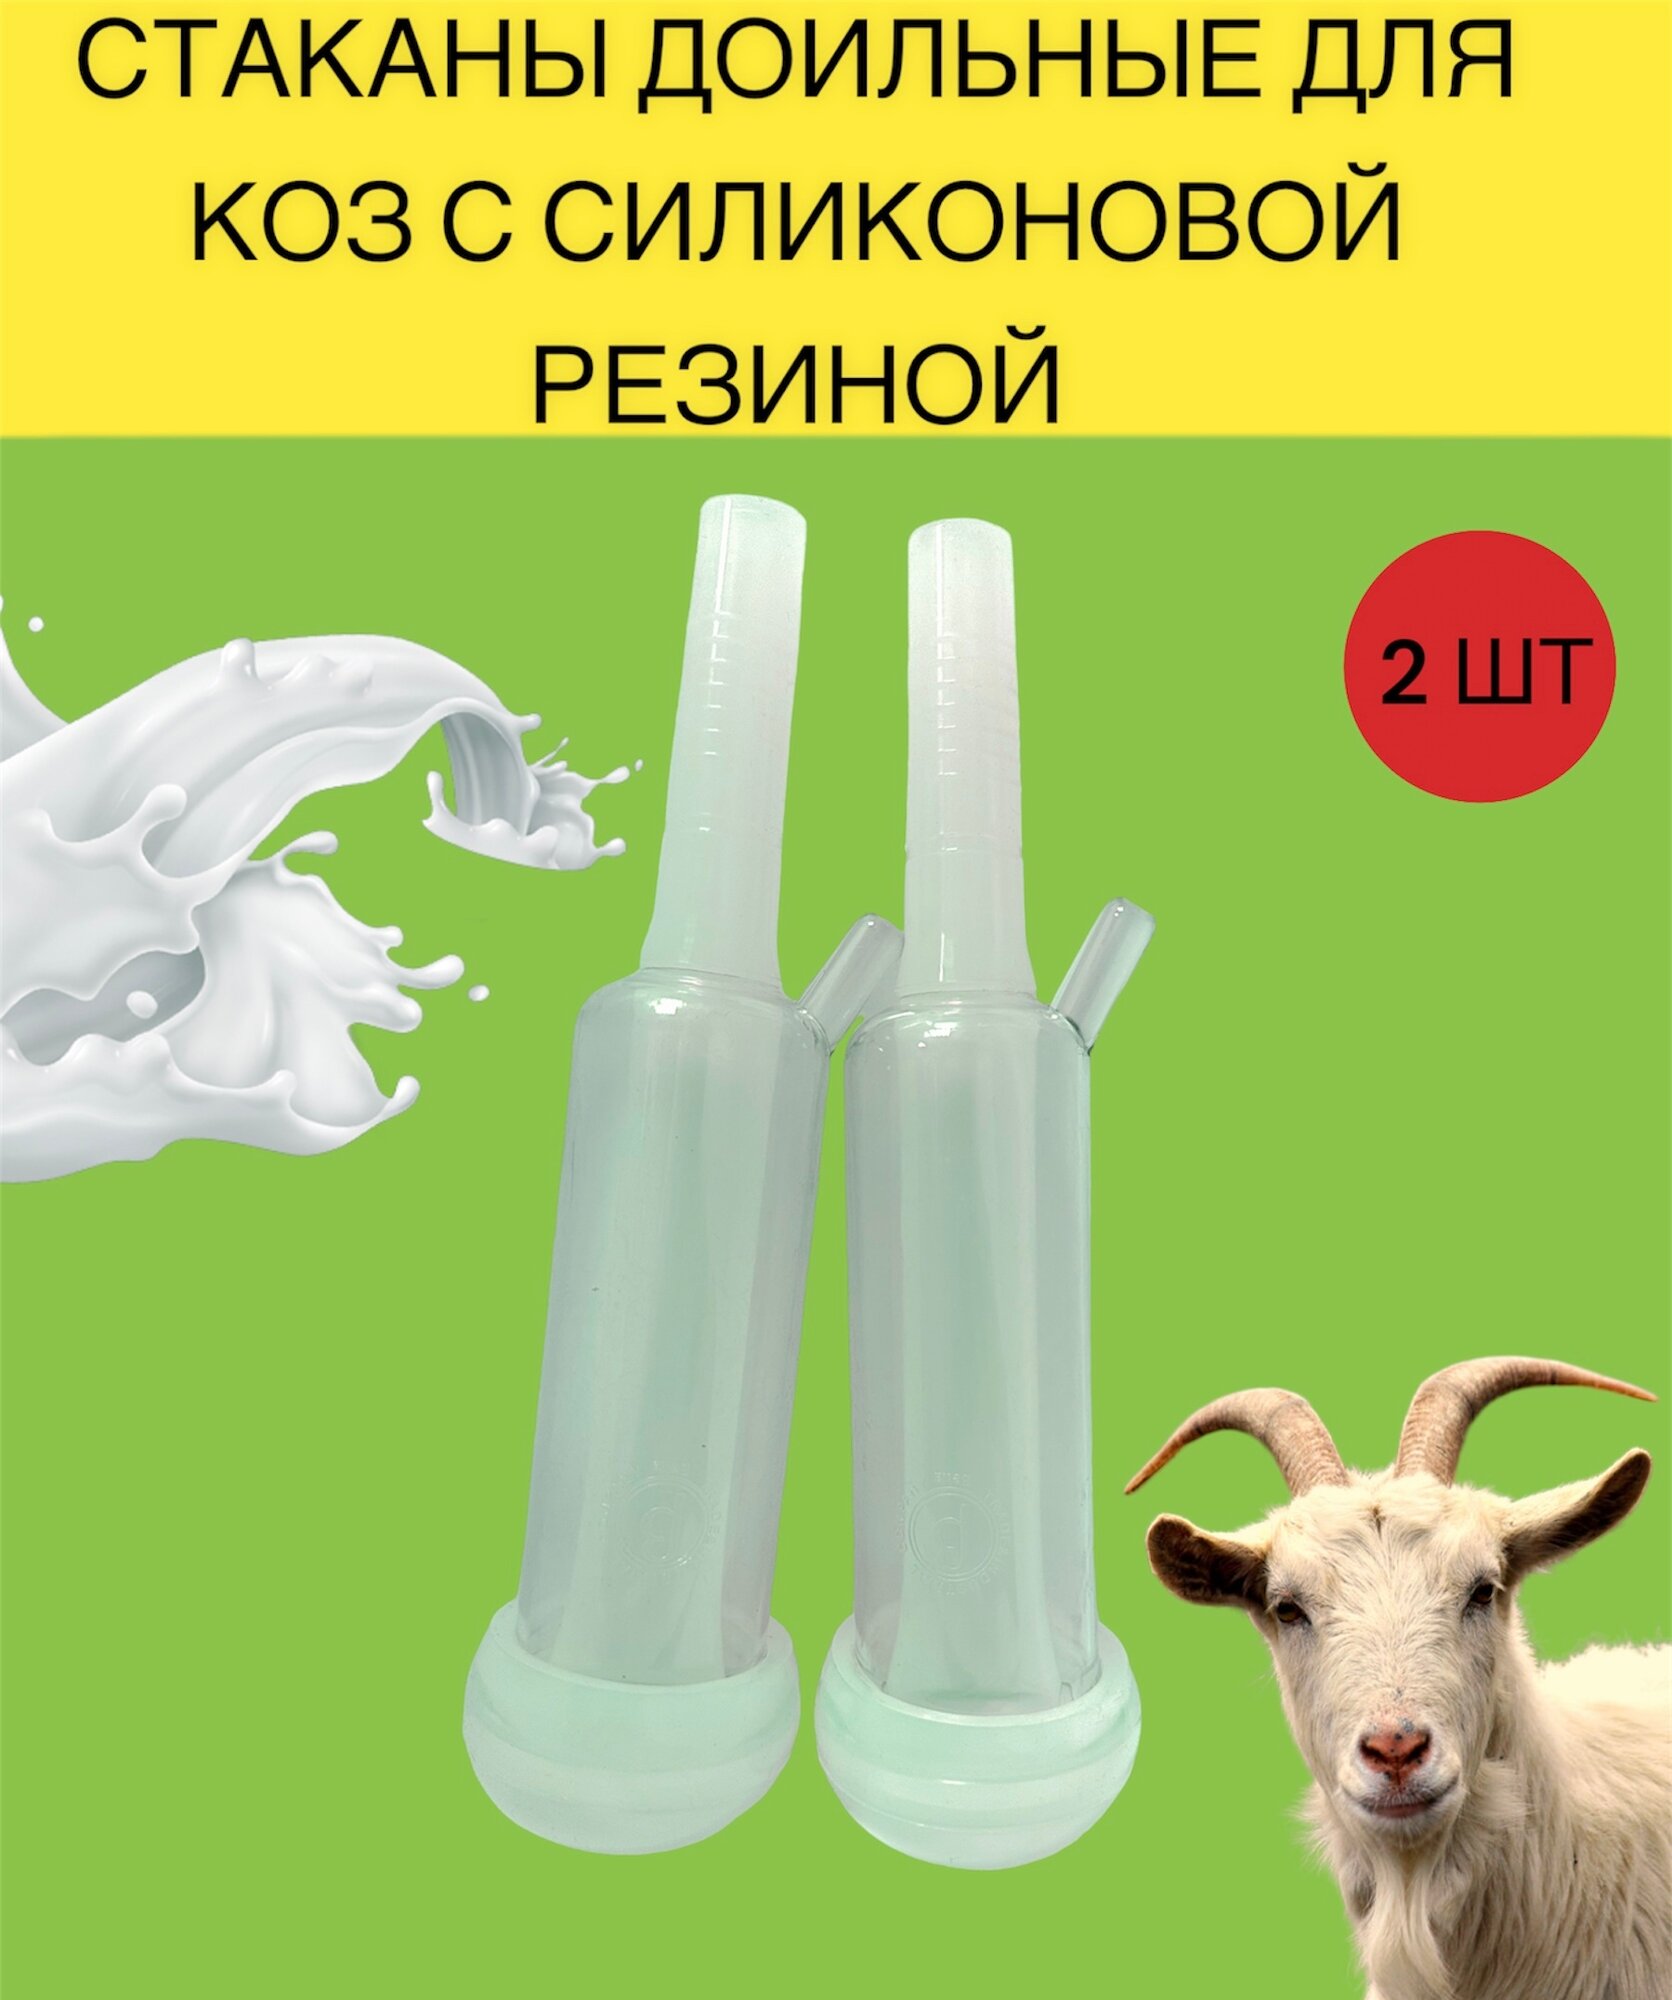 Стаканы доильные для коз с силиконовой резиной (компелект 2 штуки)